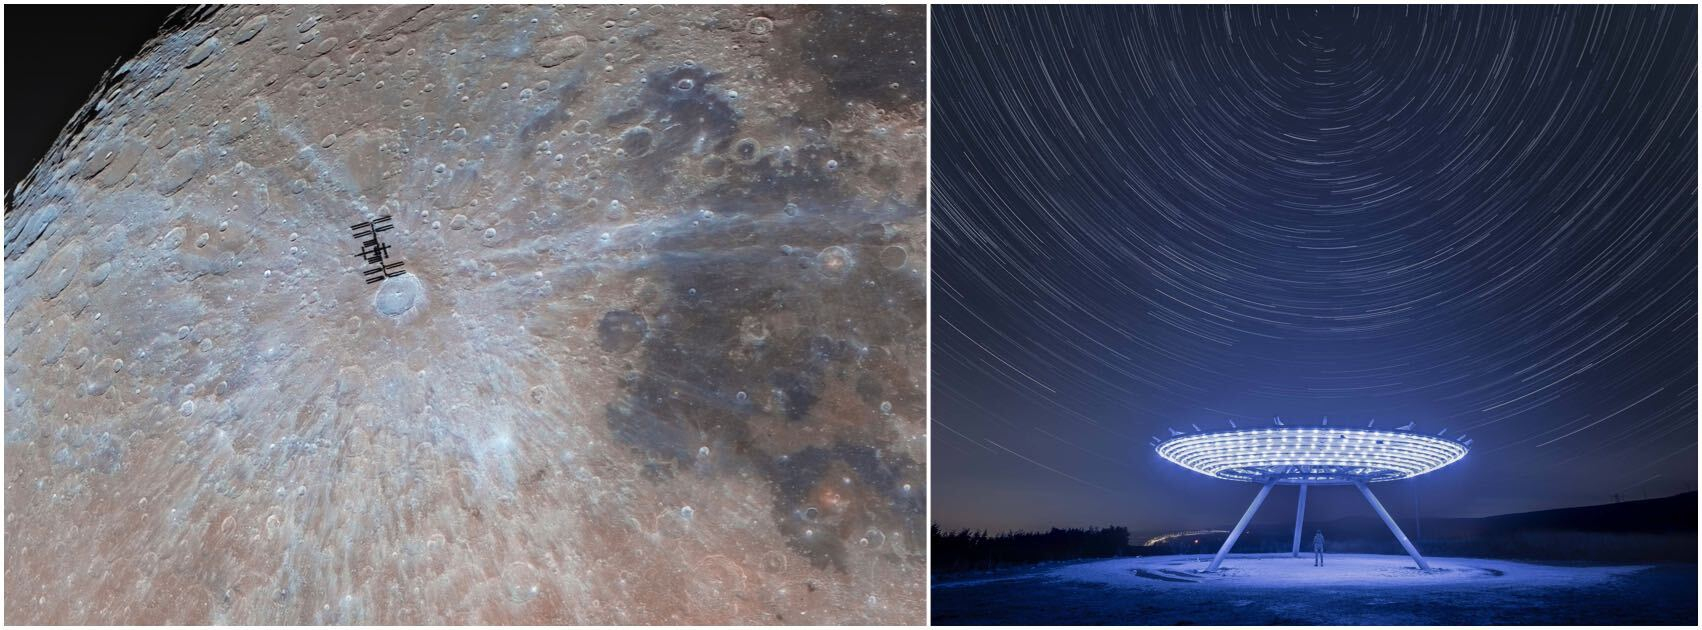 月とその前を通過する国際宇宙ステーション、そして星の軌跡でいっぱいの空の下にある青いレーダーのような皿の画像。